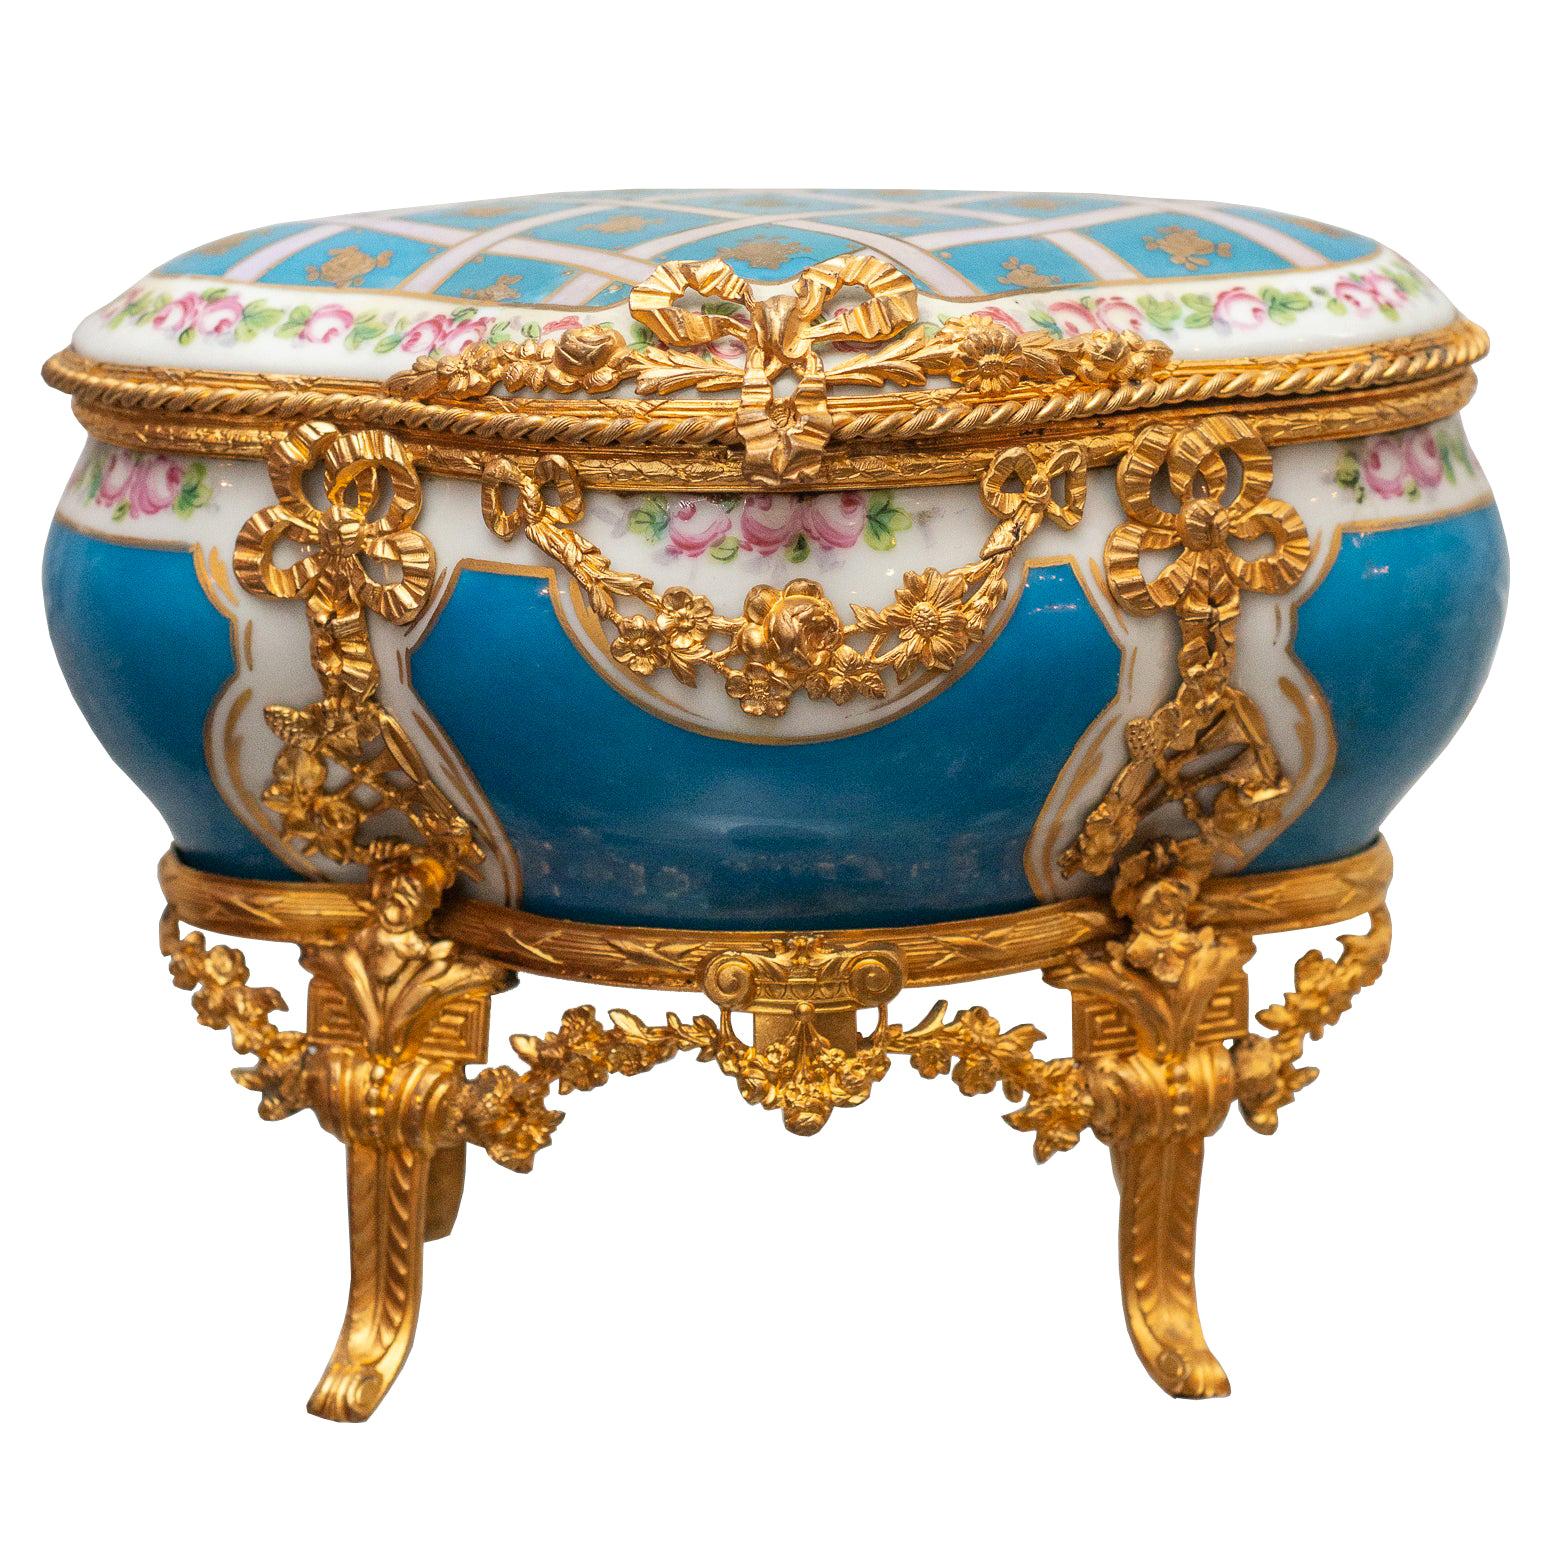 Antique Sévres Bleu Celeste Porcelain Jewelry Casket with Gold Ormolu Details For Sale